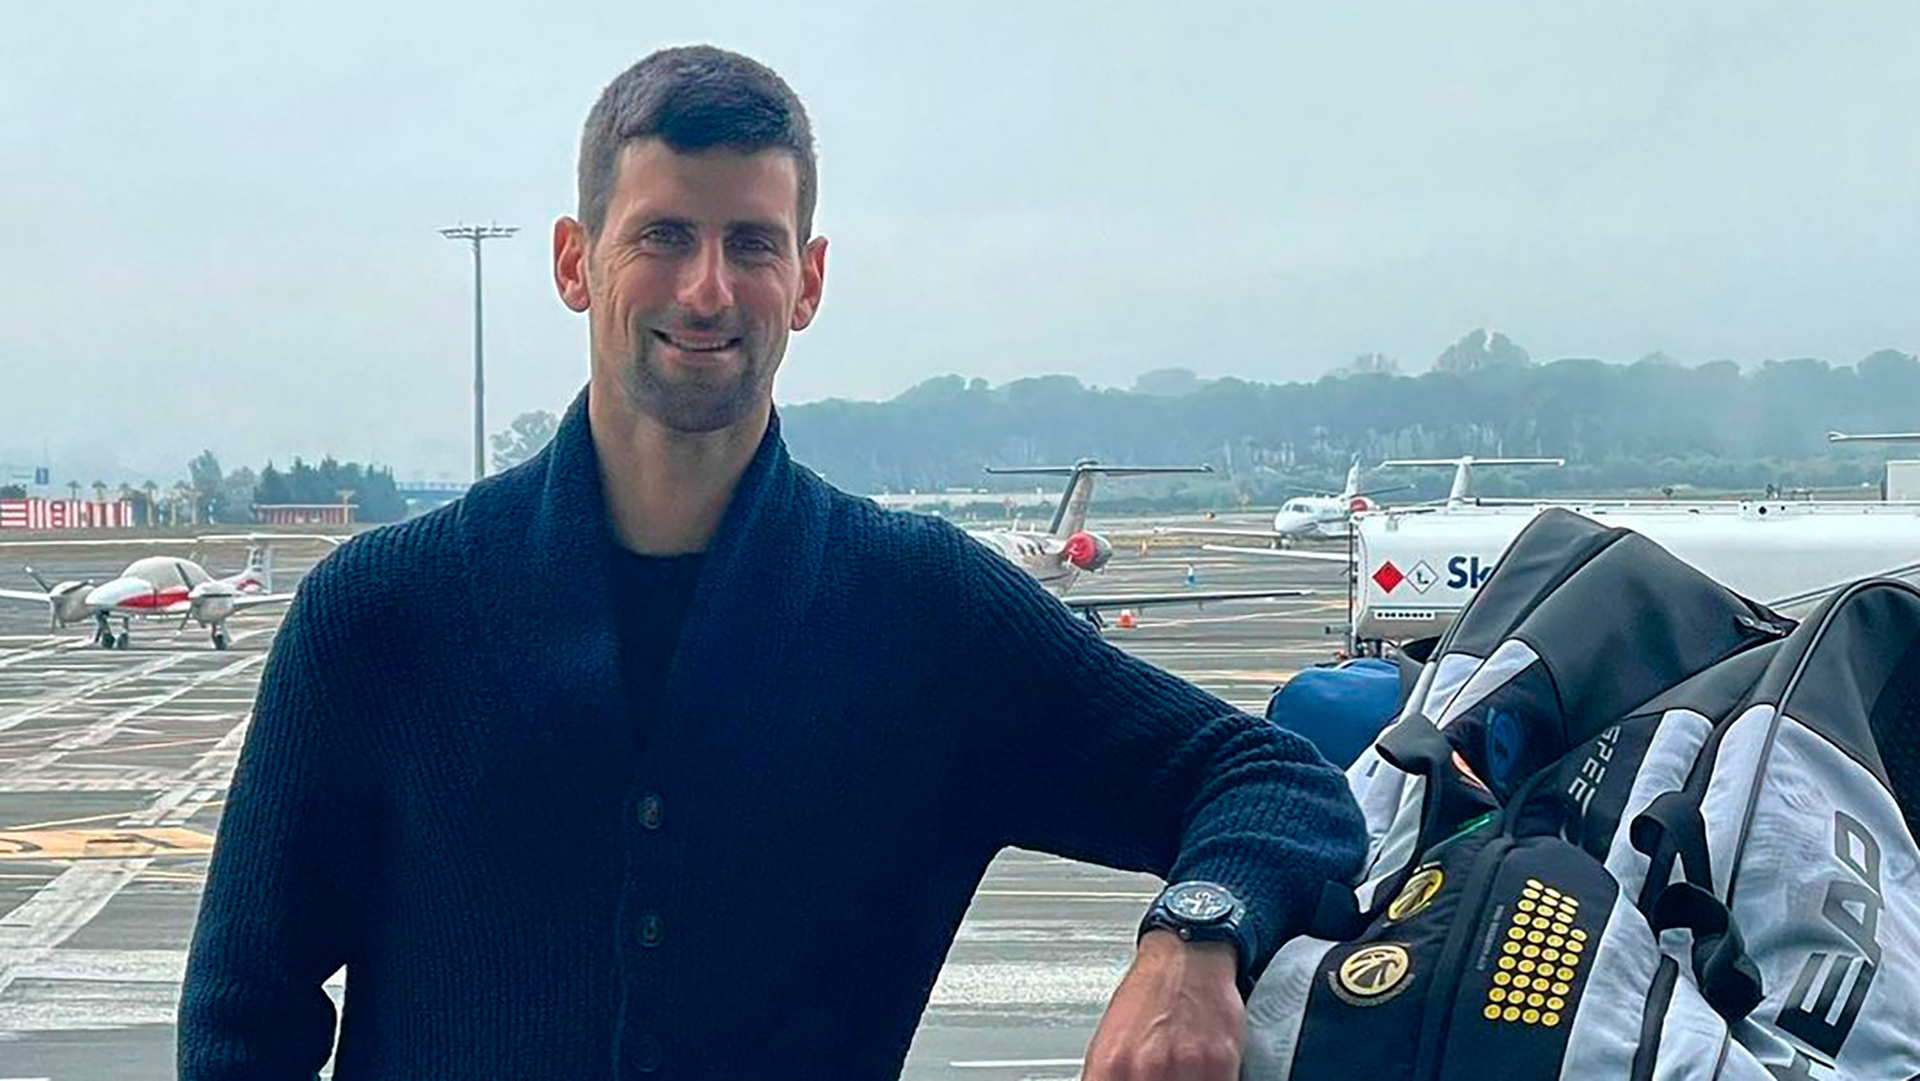 Rechazaron la visa de Novak Djokovic y deberá abandonar Australia - Infobae